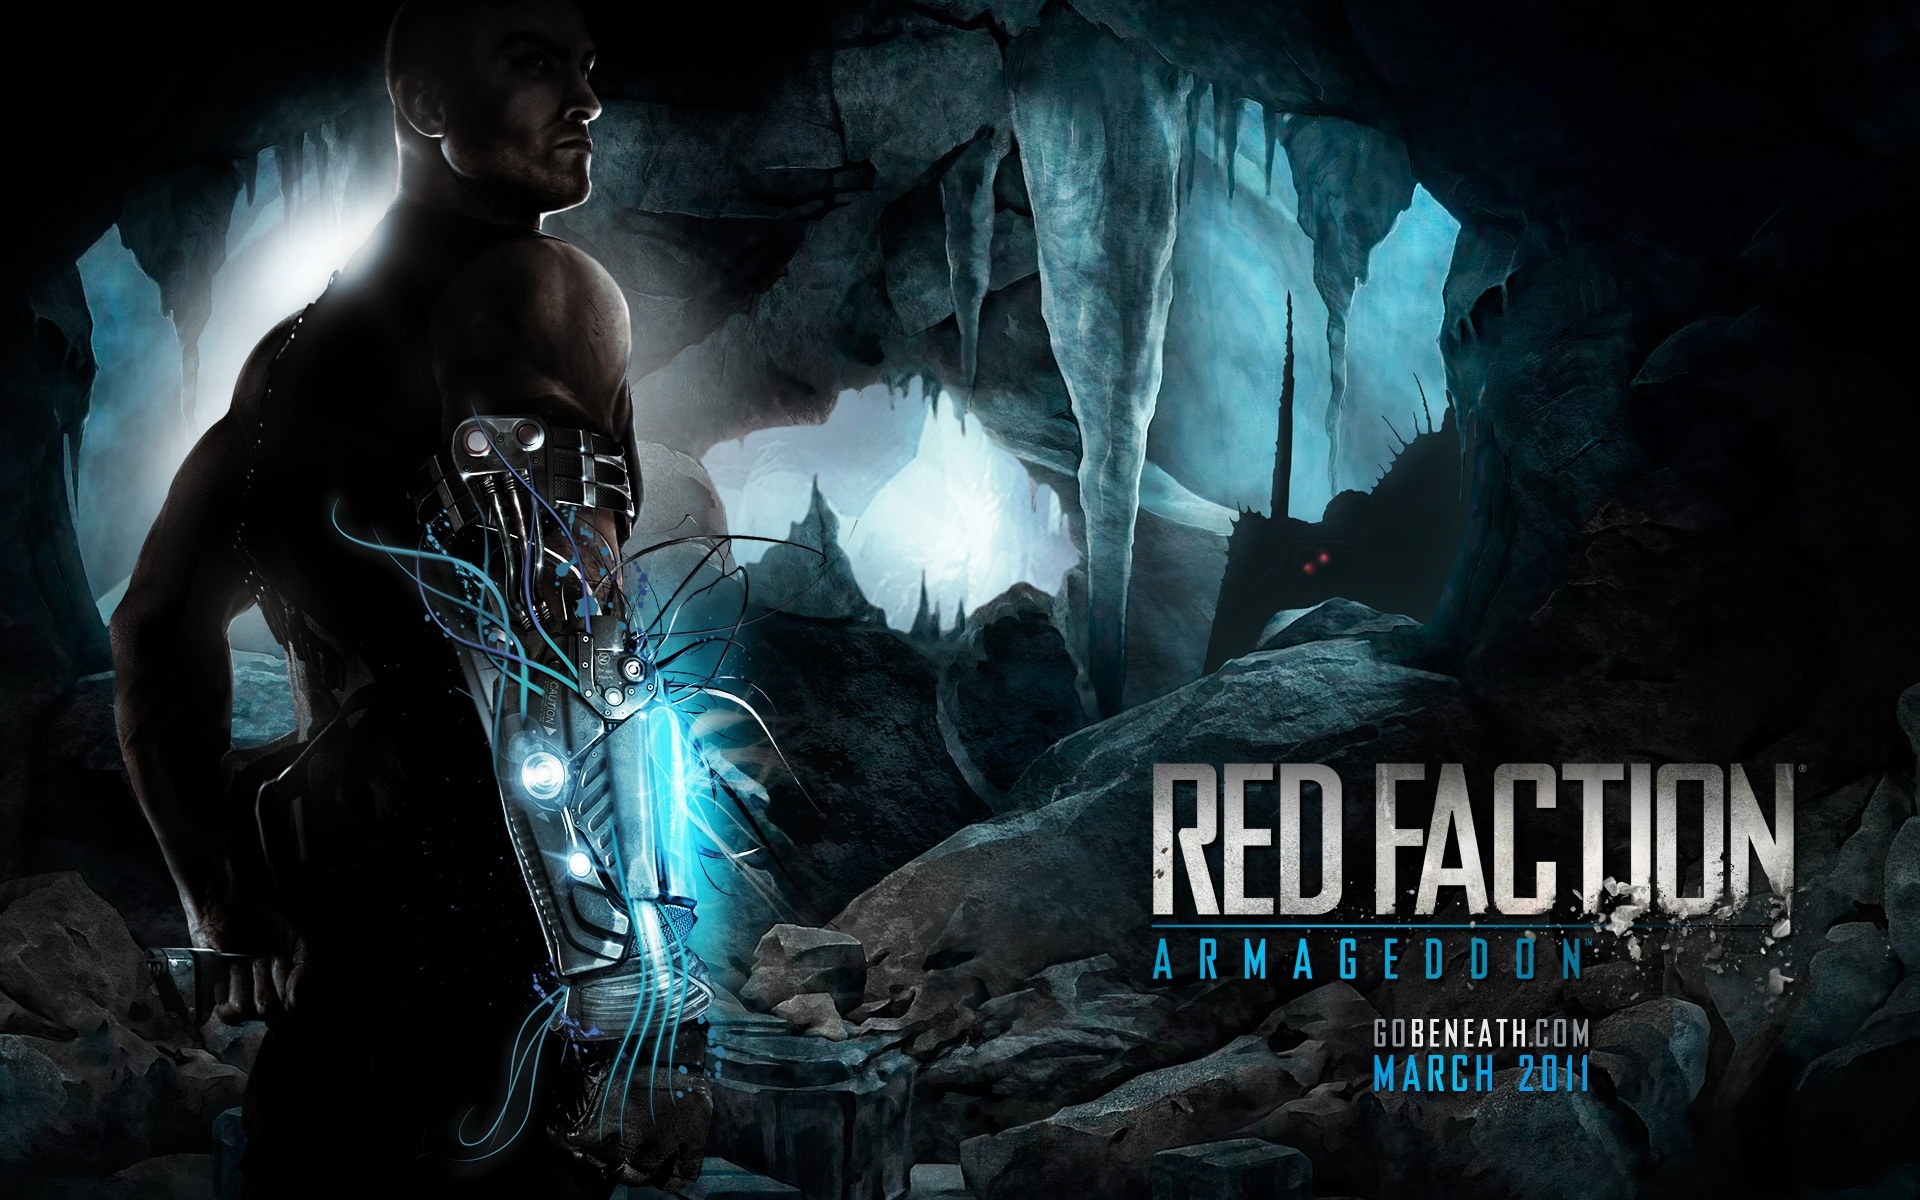 red faction armageddon commando & recon edition download free